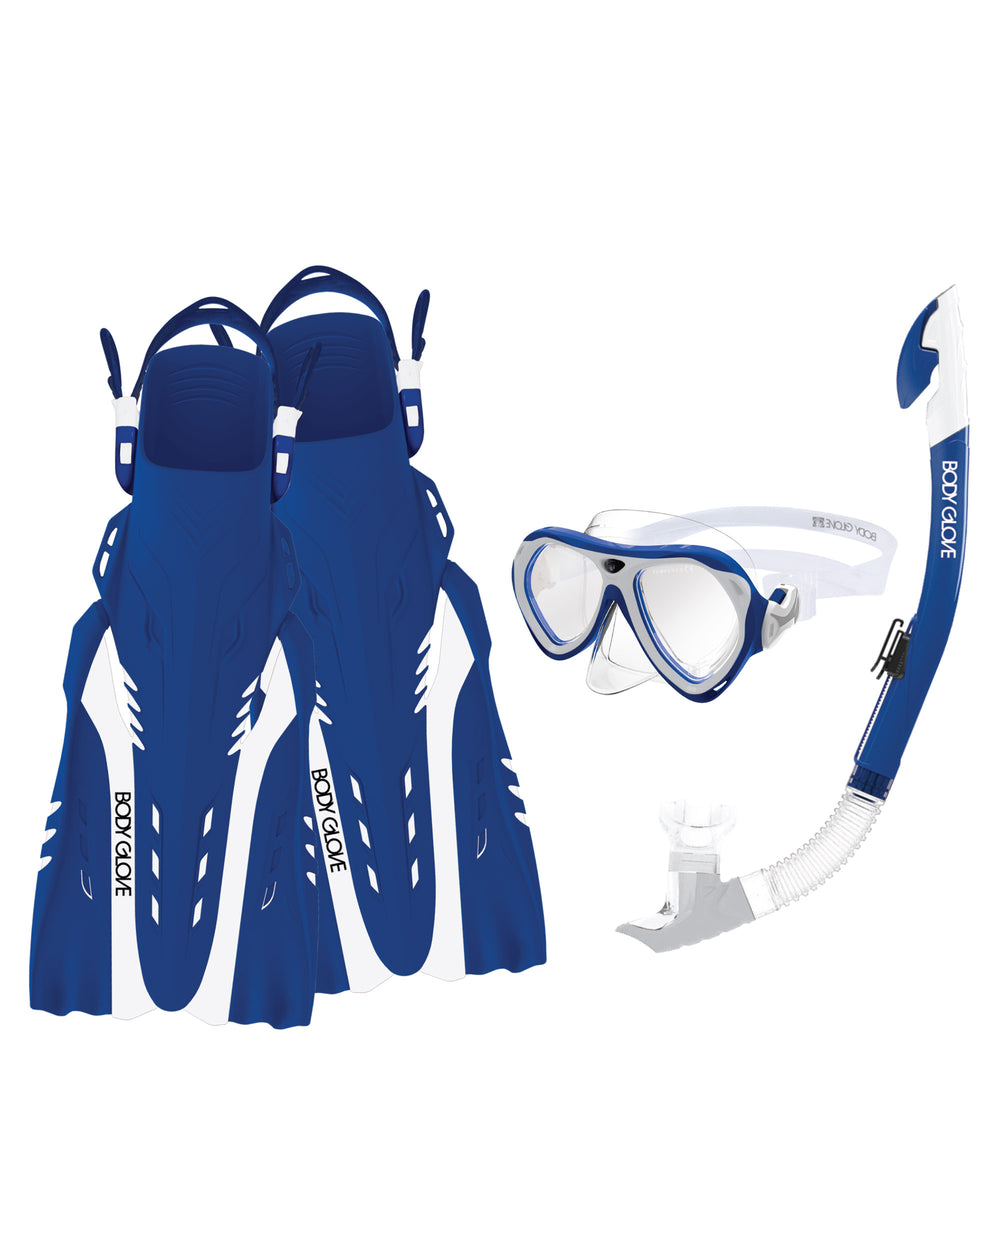 Aruba Women's Mask/Snorkel/Fin Snorkeling Set - Blue/White